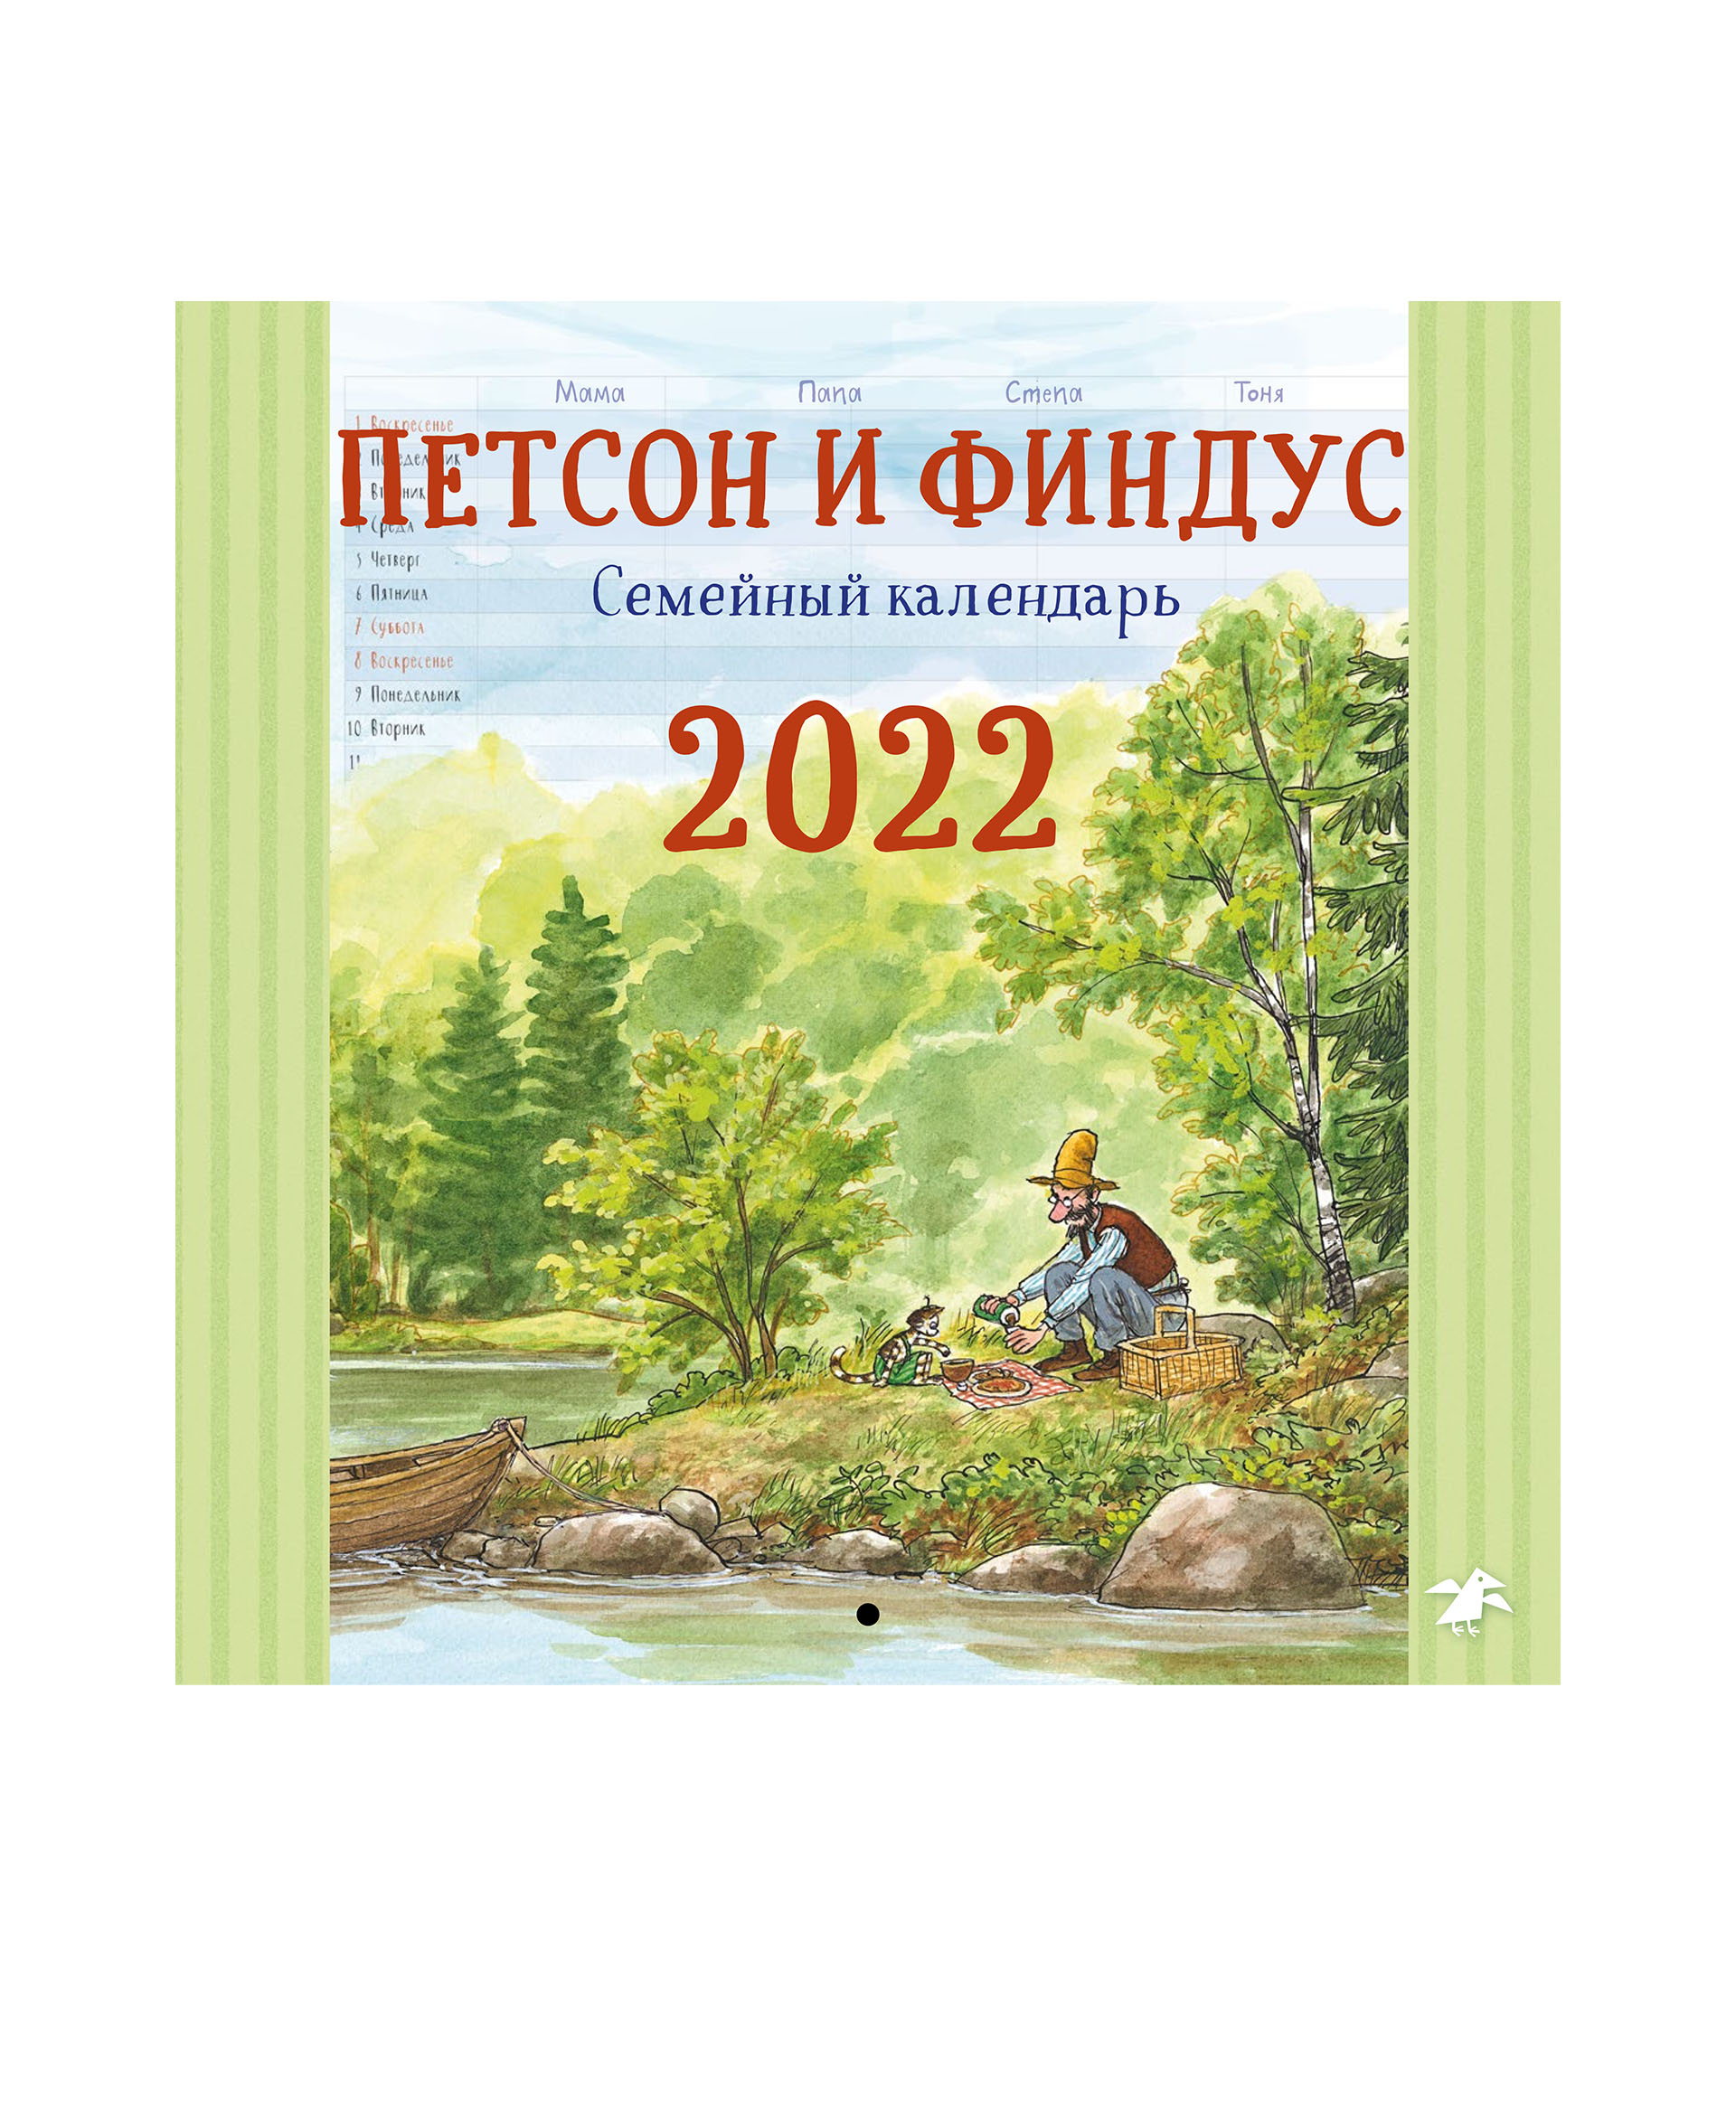 Белая ворона Петсон и Финдус семейный календарь 2022 978-5-00114-270-6